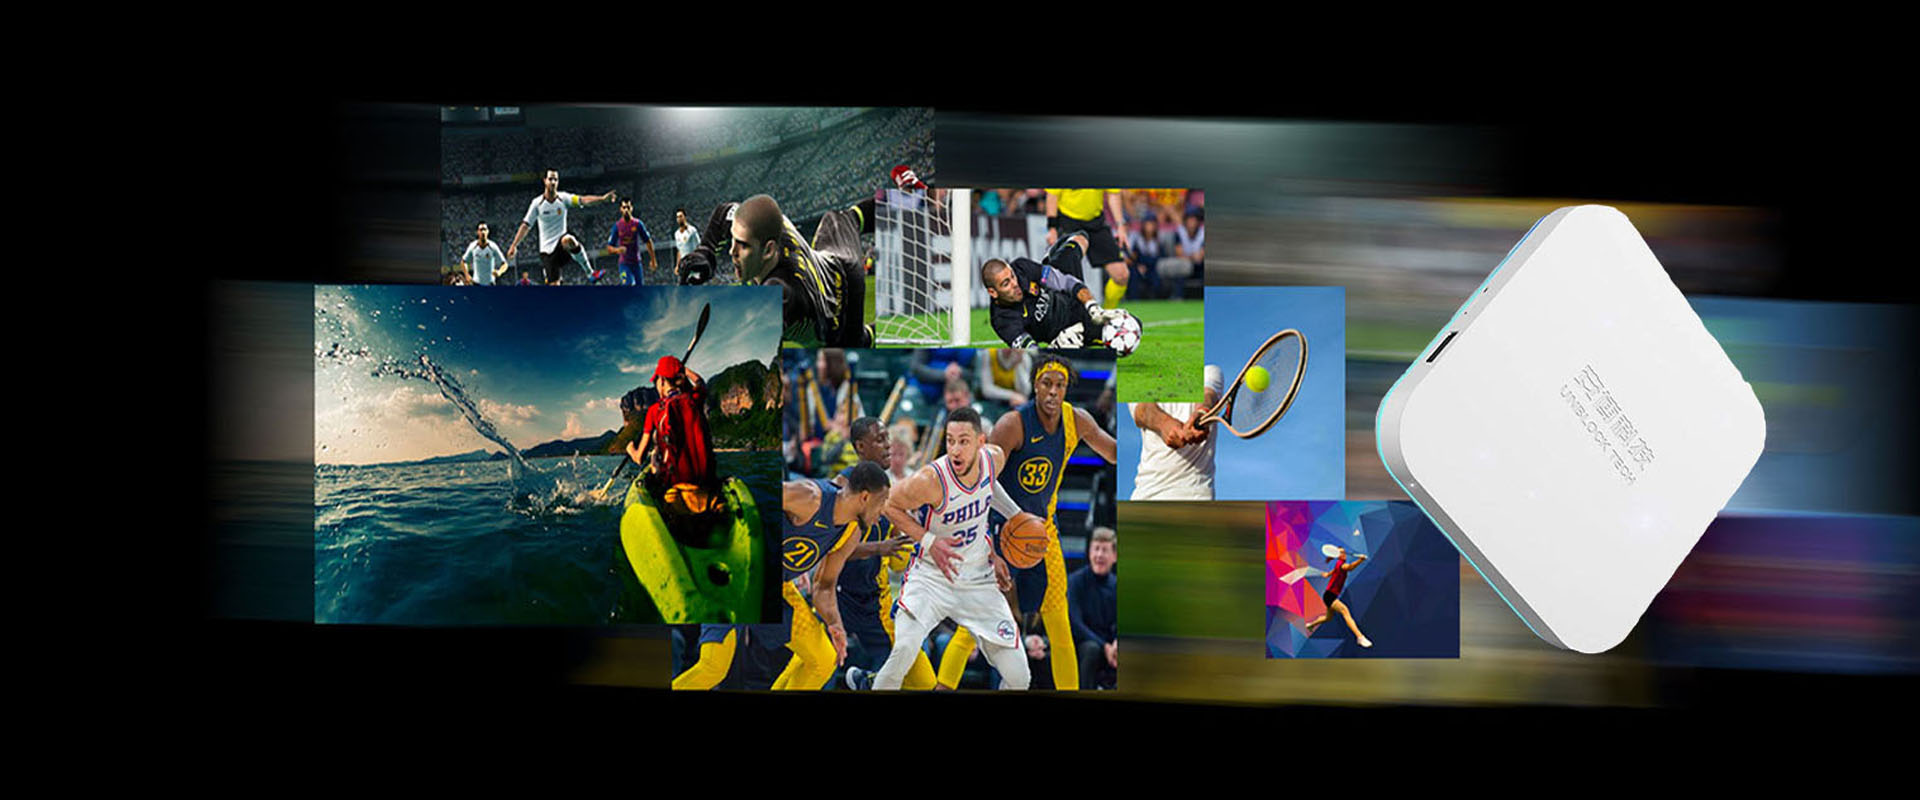 UNBLOCK TECH UBOX8 - Sport-tv-box op maat gemaakt voor sportfans